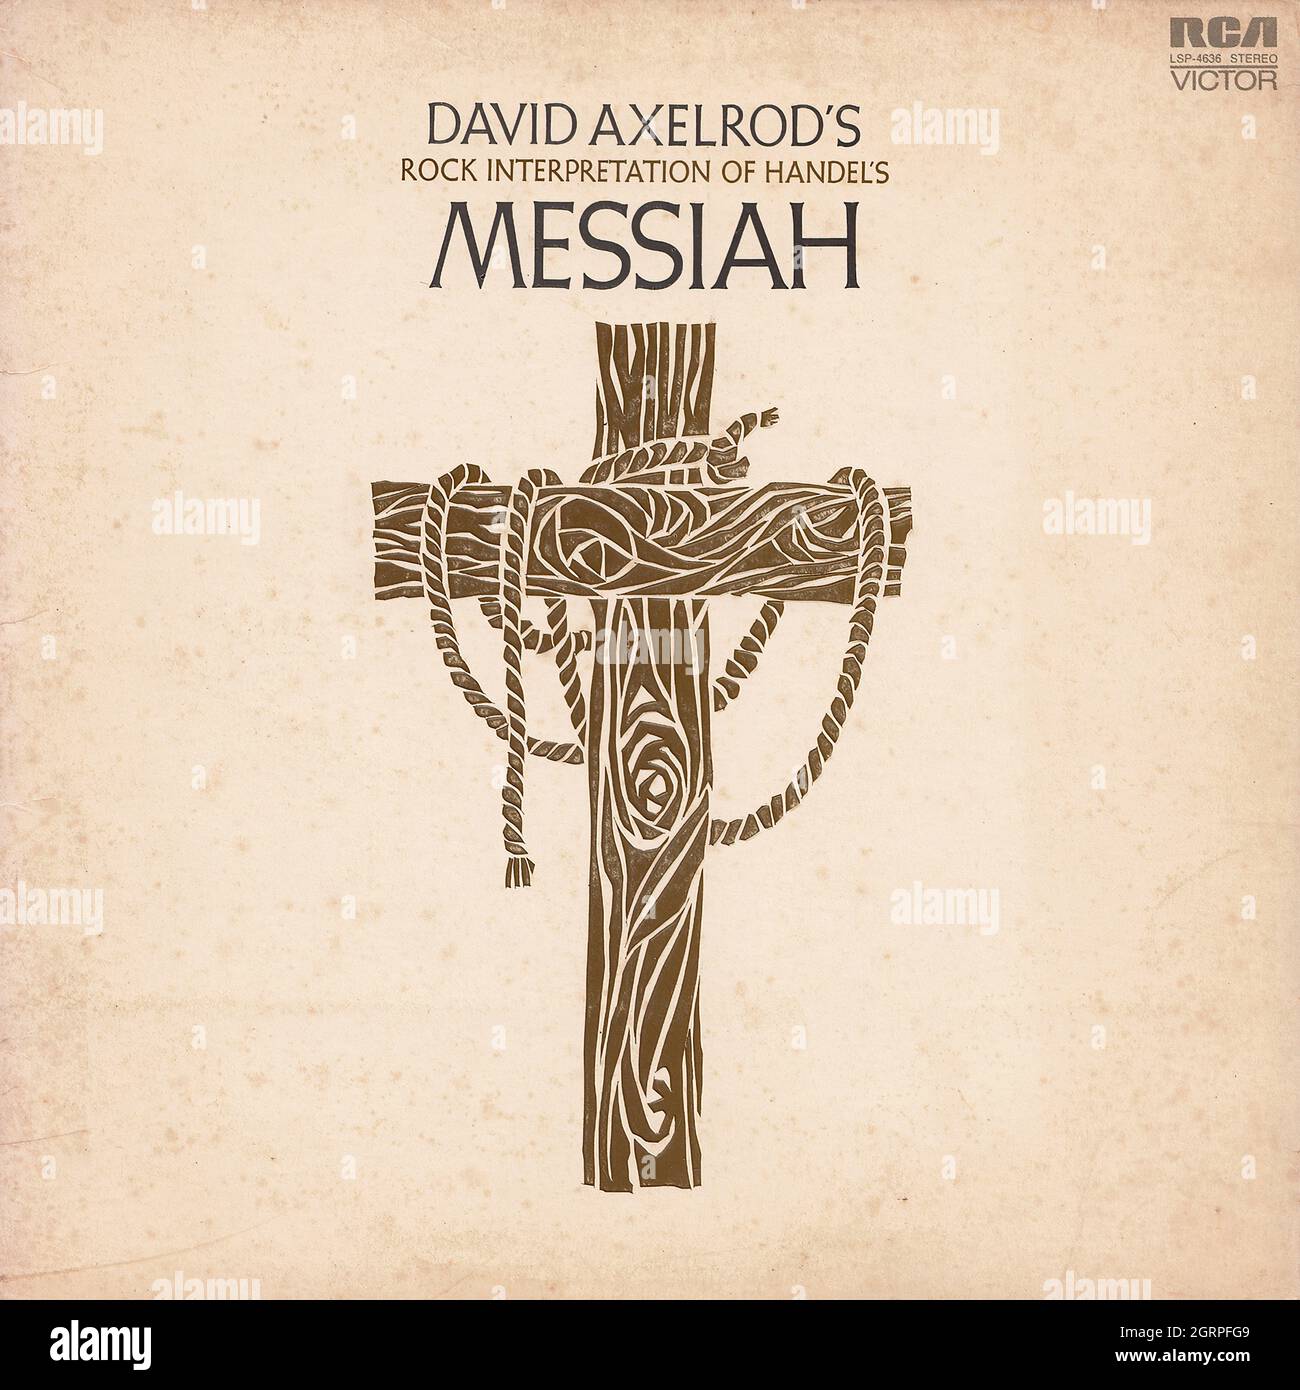 David Axelrod - Rock Interpretation of Händels Messiah - Vintage Vinyl Schallplattencover Stockfoto